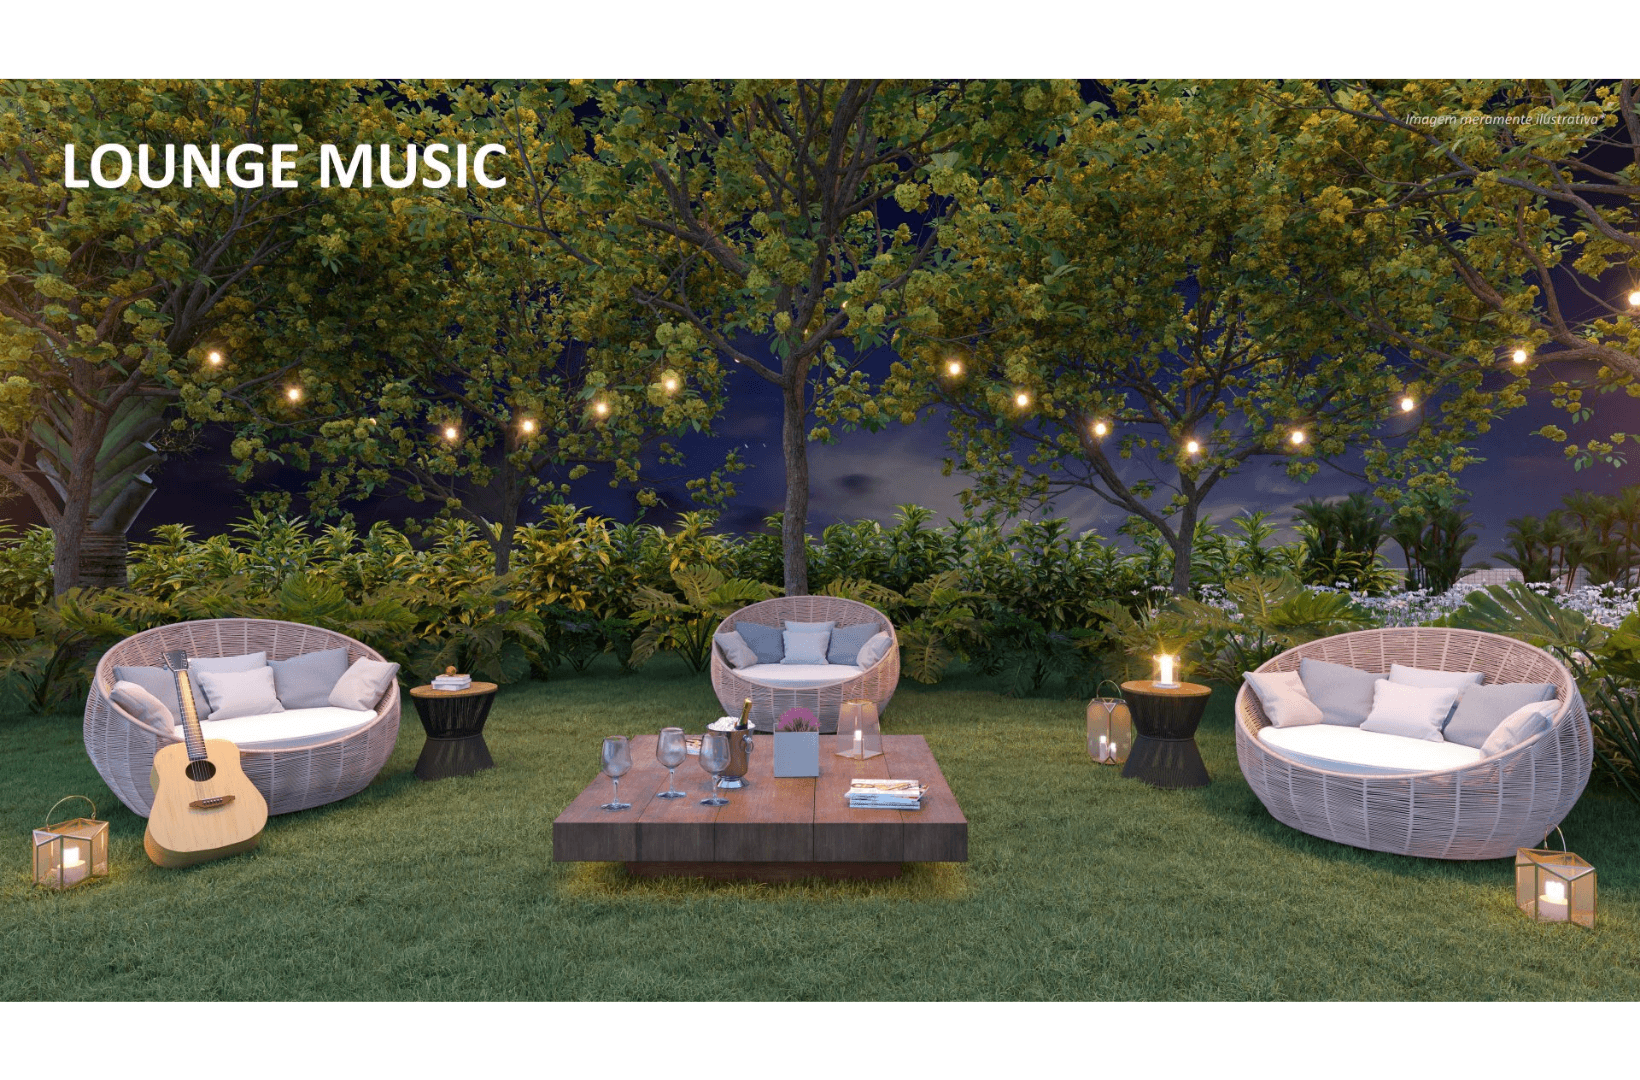 Lounge Music com Passeio Olfativo – sim um lugar par curtir uma boa música ao ar livre e ao luar com seus amigos ou com sua(seu) amada(o)